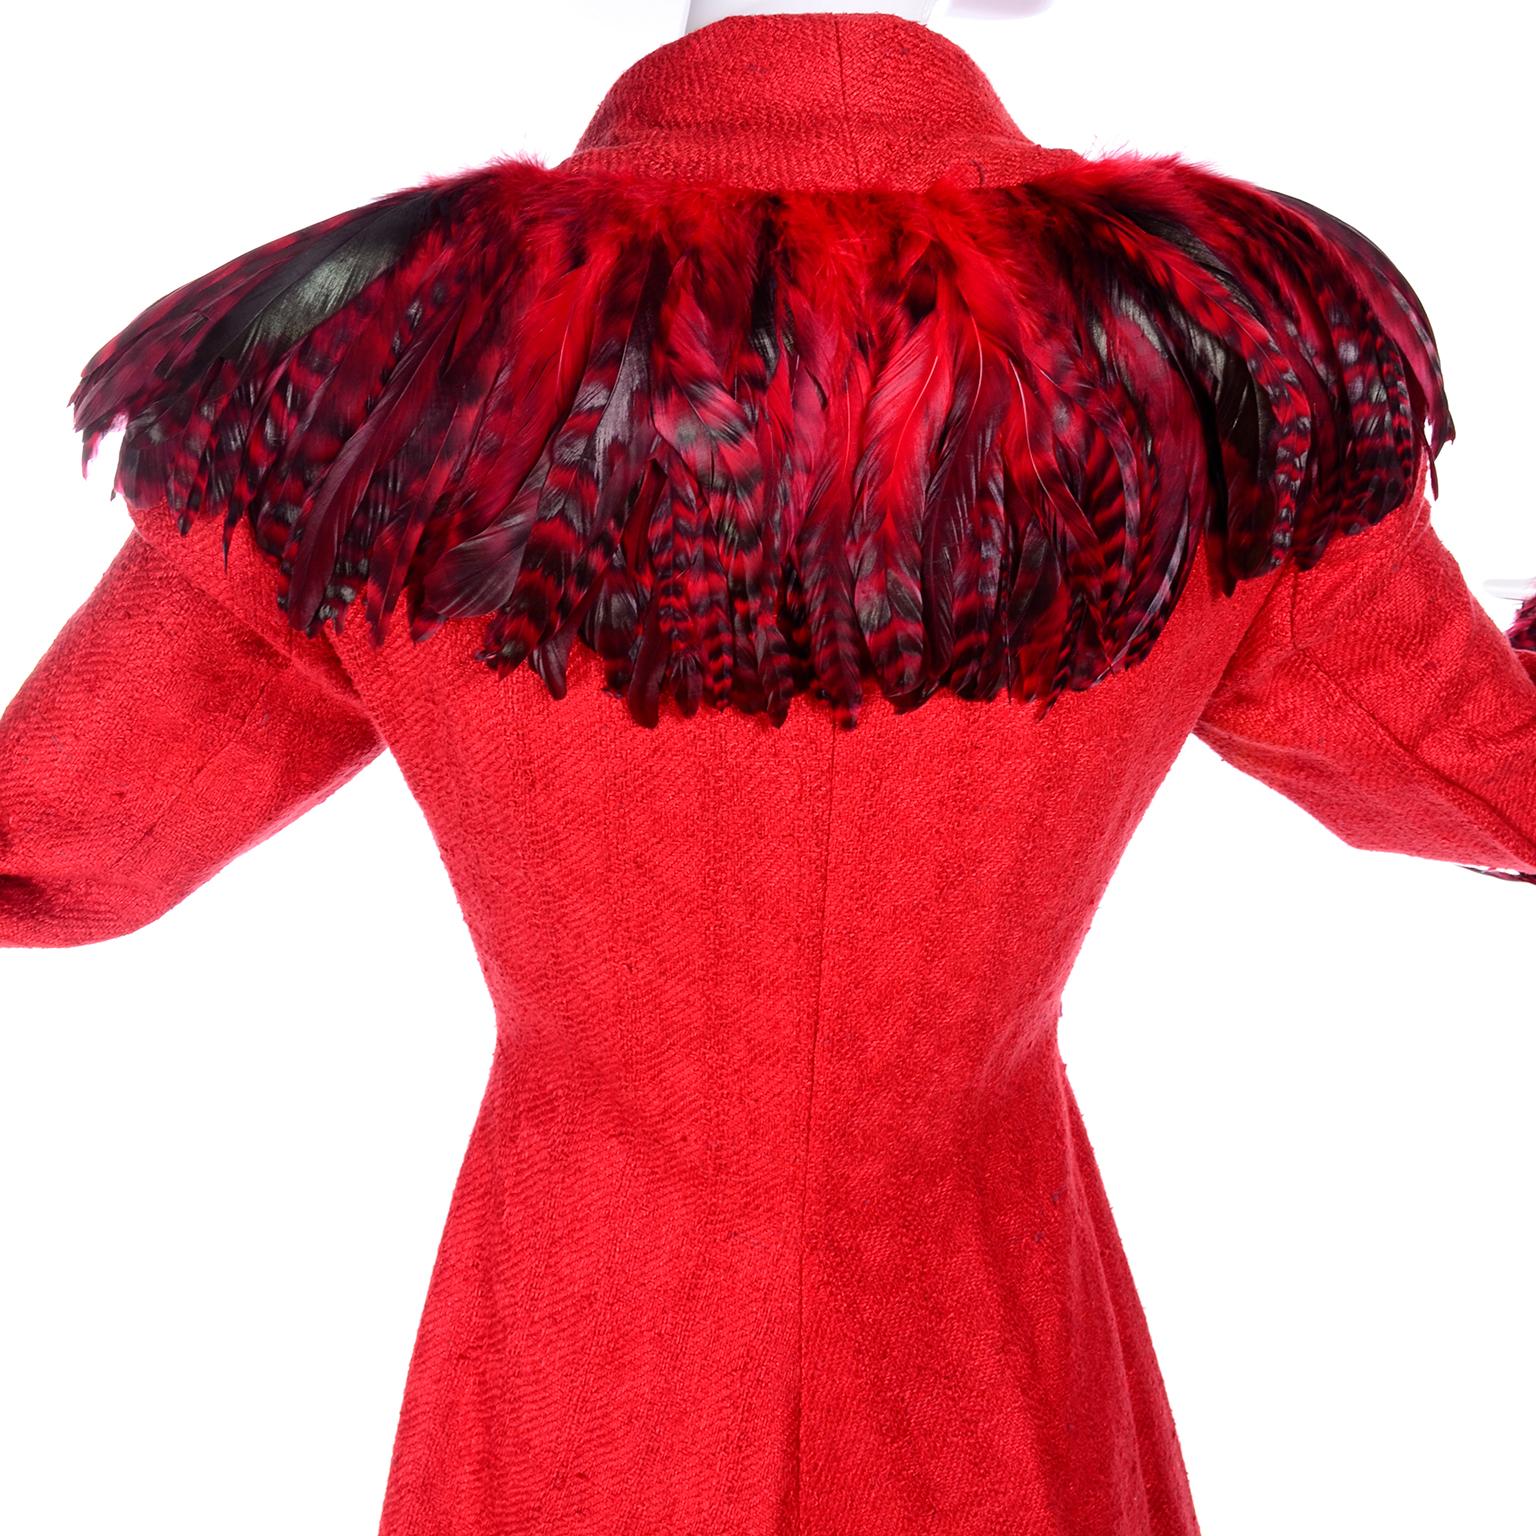 Simon Copeland London Fashion Designer Bespoke Red Skirt & Feather Jacket Suit  1